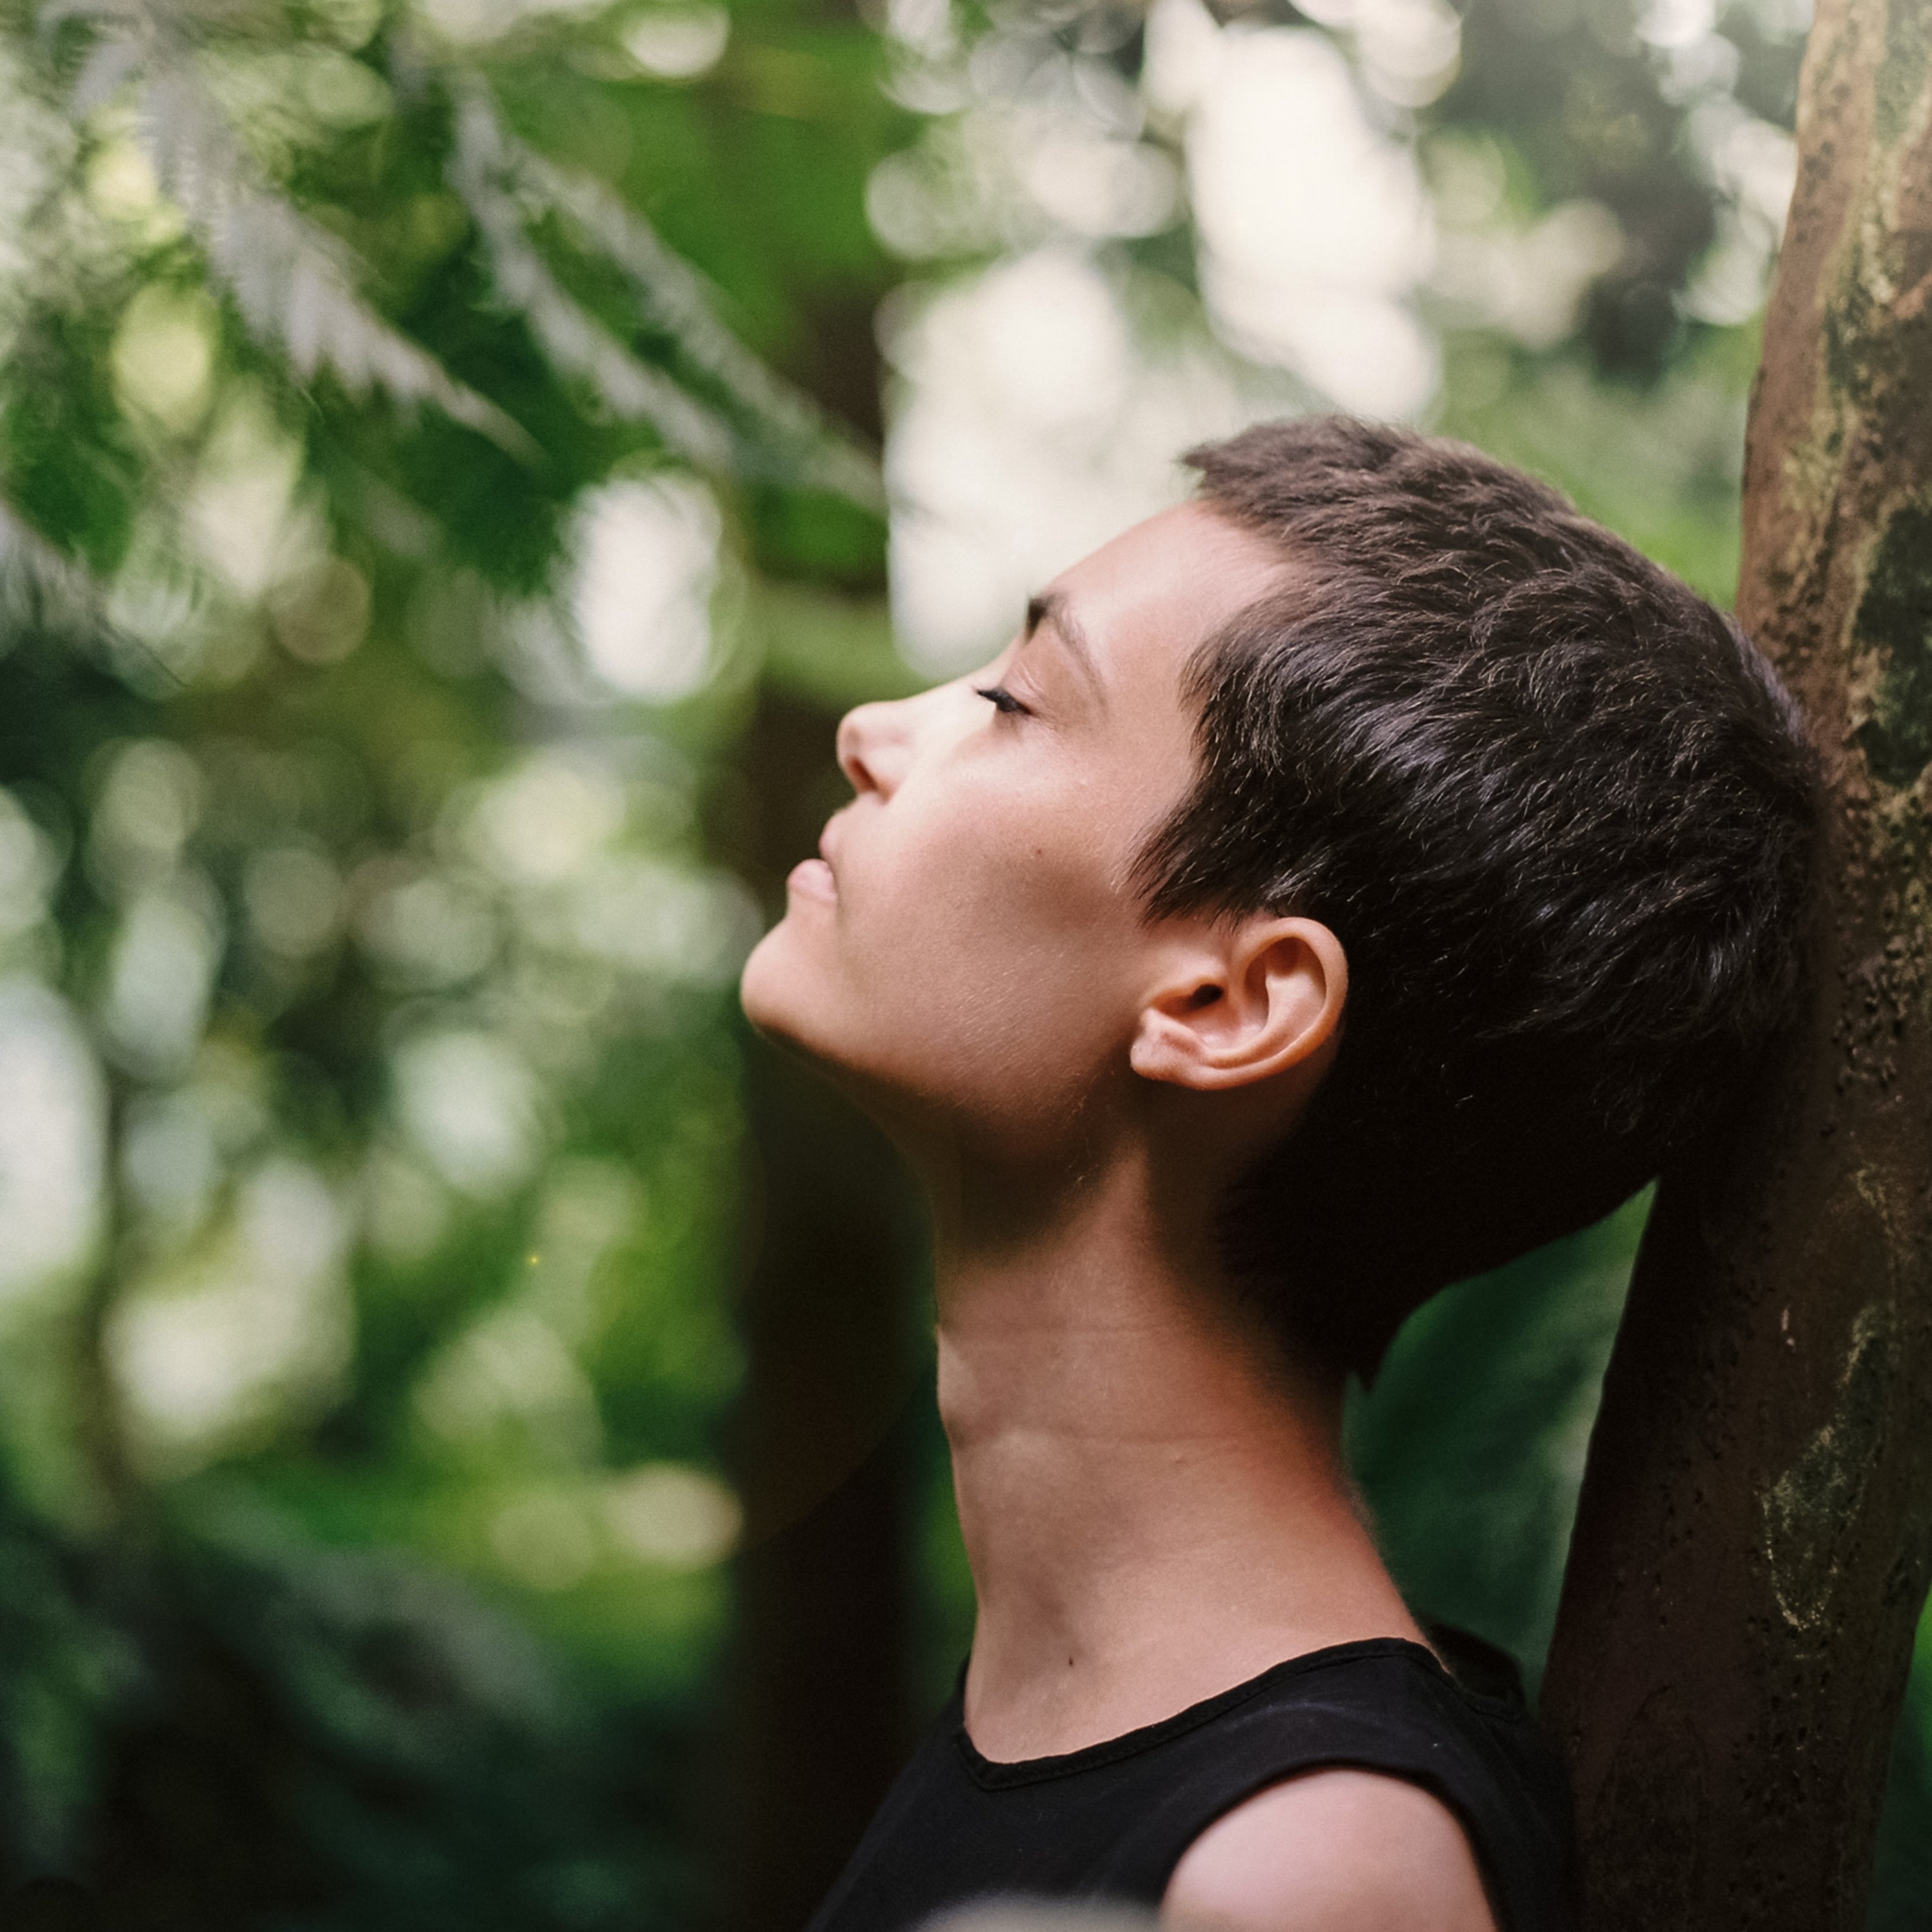 Cinc tècniques de respiració per relaxar-se davant de l'ansietat